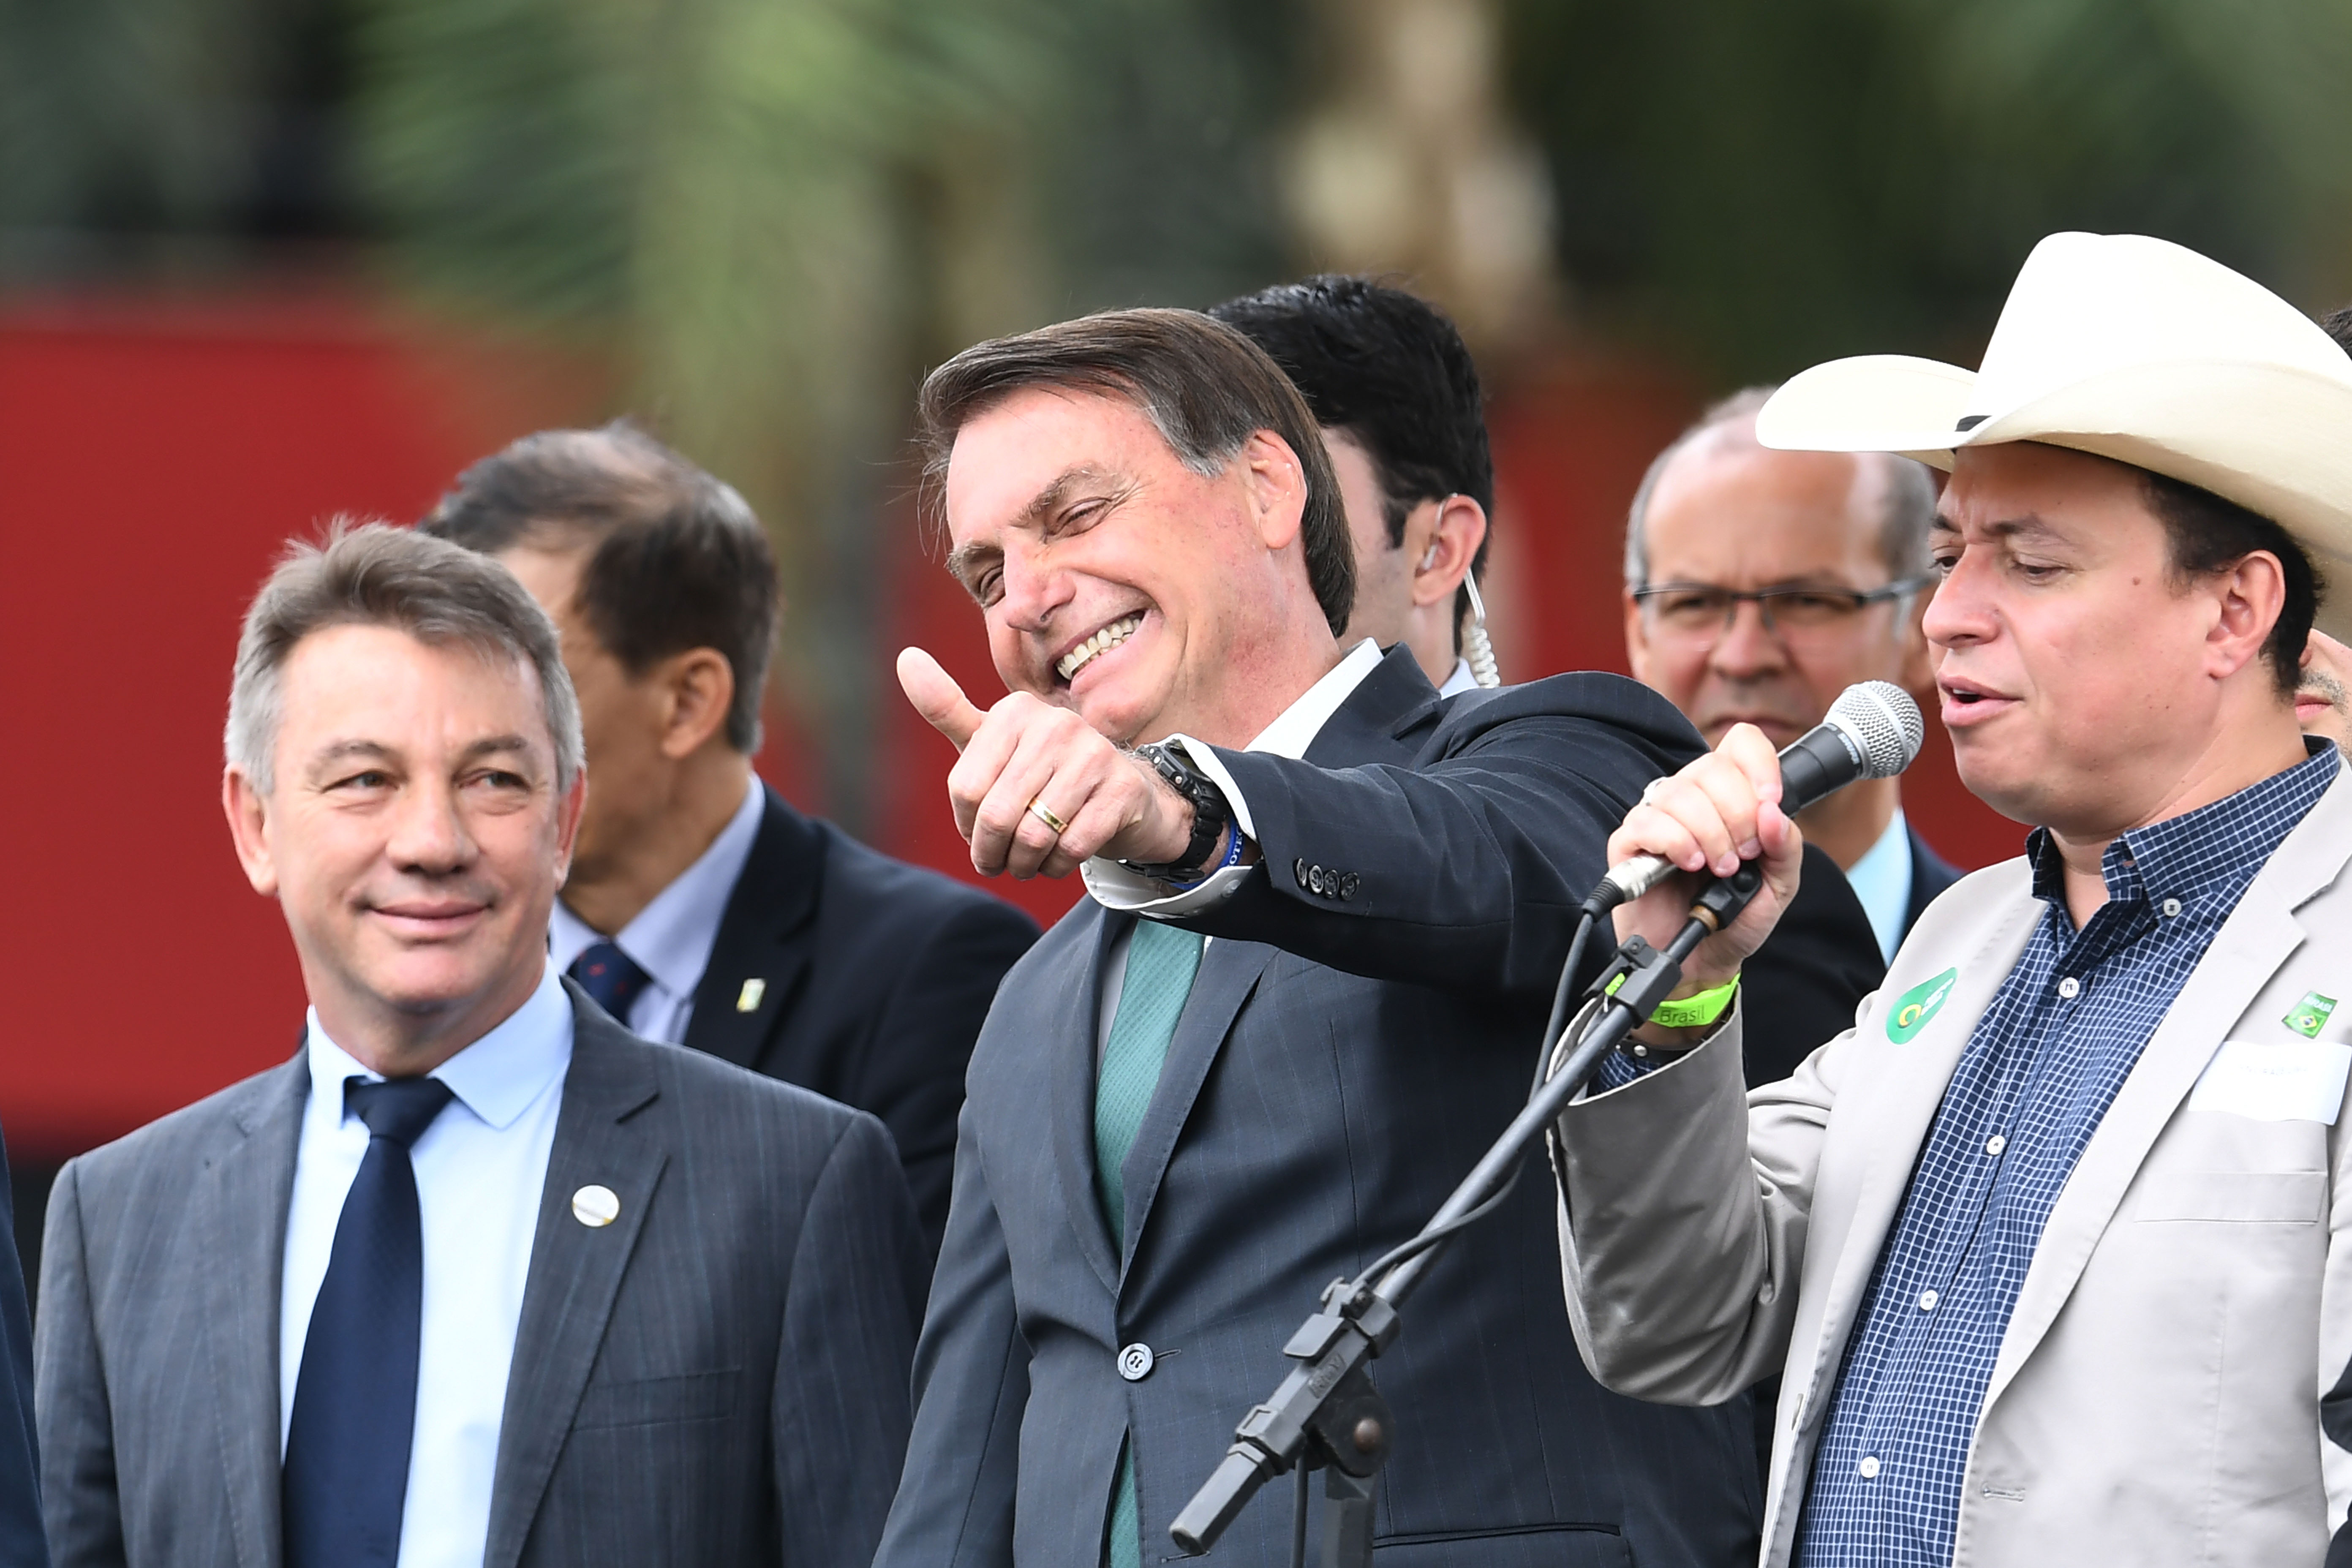 Bolsonaro saját pártot alapított korrupció elleni harc és a keresztény értékek nevében